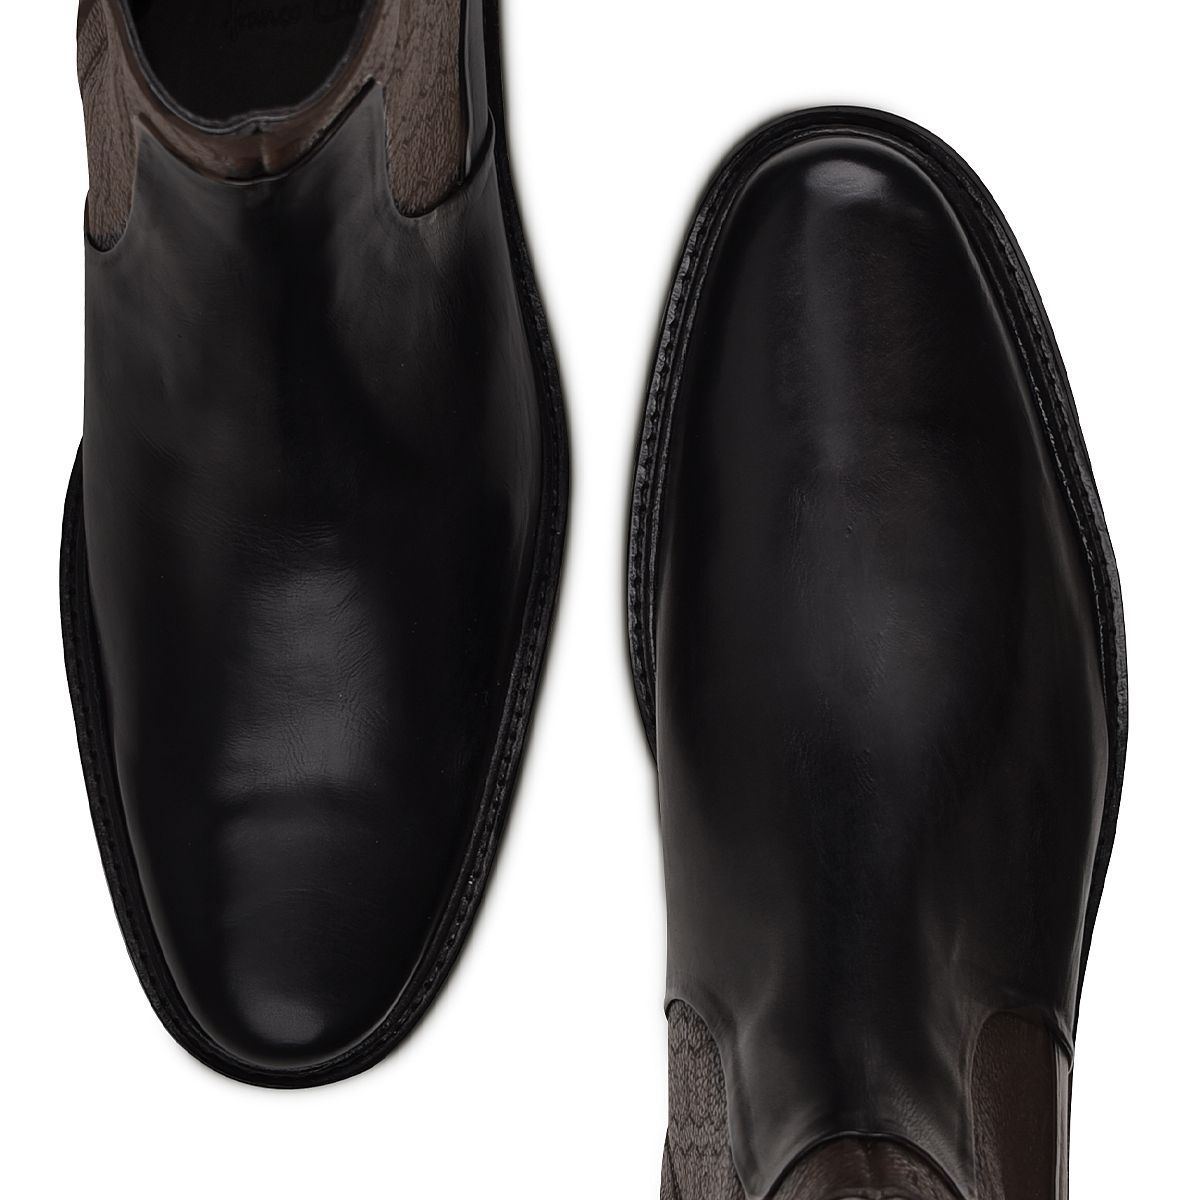 Cuadra Men's Black Engraved Leather Chelsea Boots - Dudes Boutique